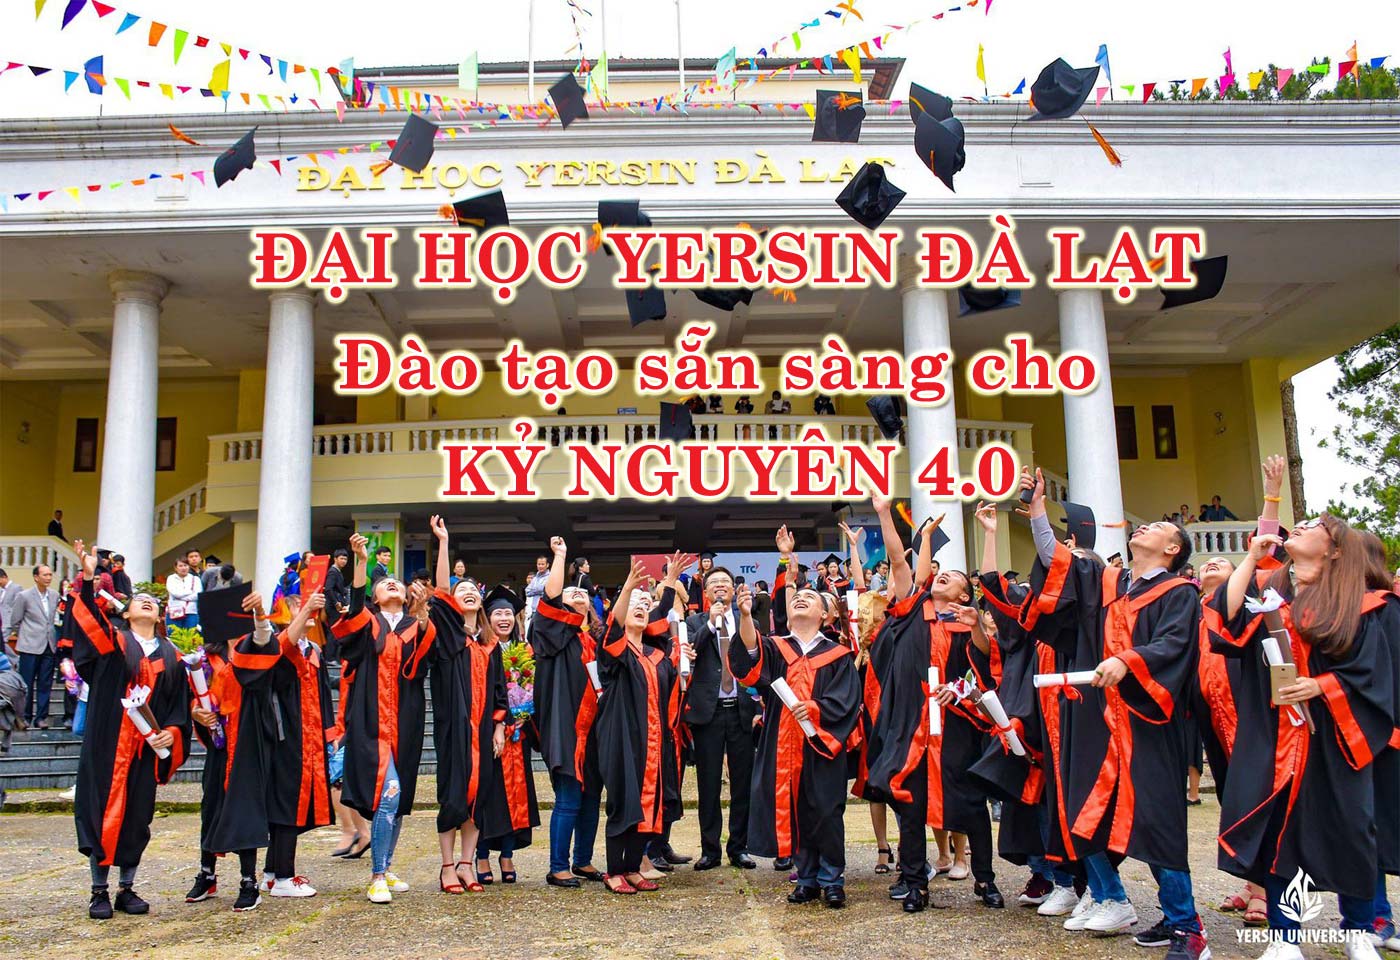 Đại học Yersin Đà Lạt - đào tạo sẵn sàng cho kỷ nguyên 4.0 - Ảnh 1